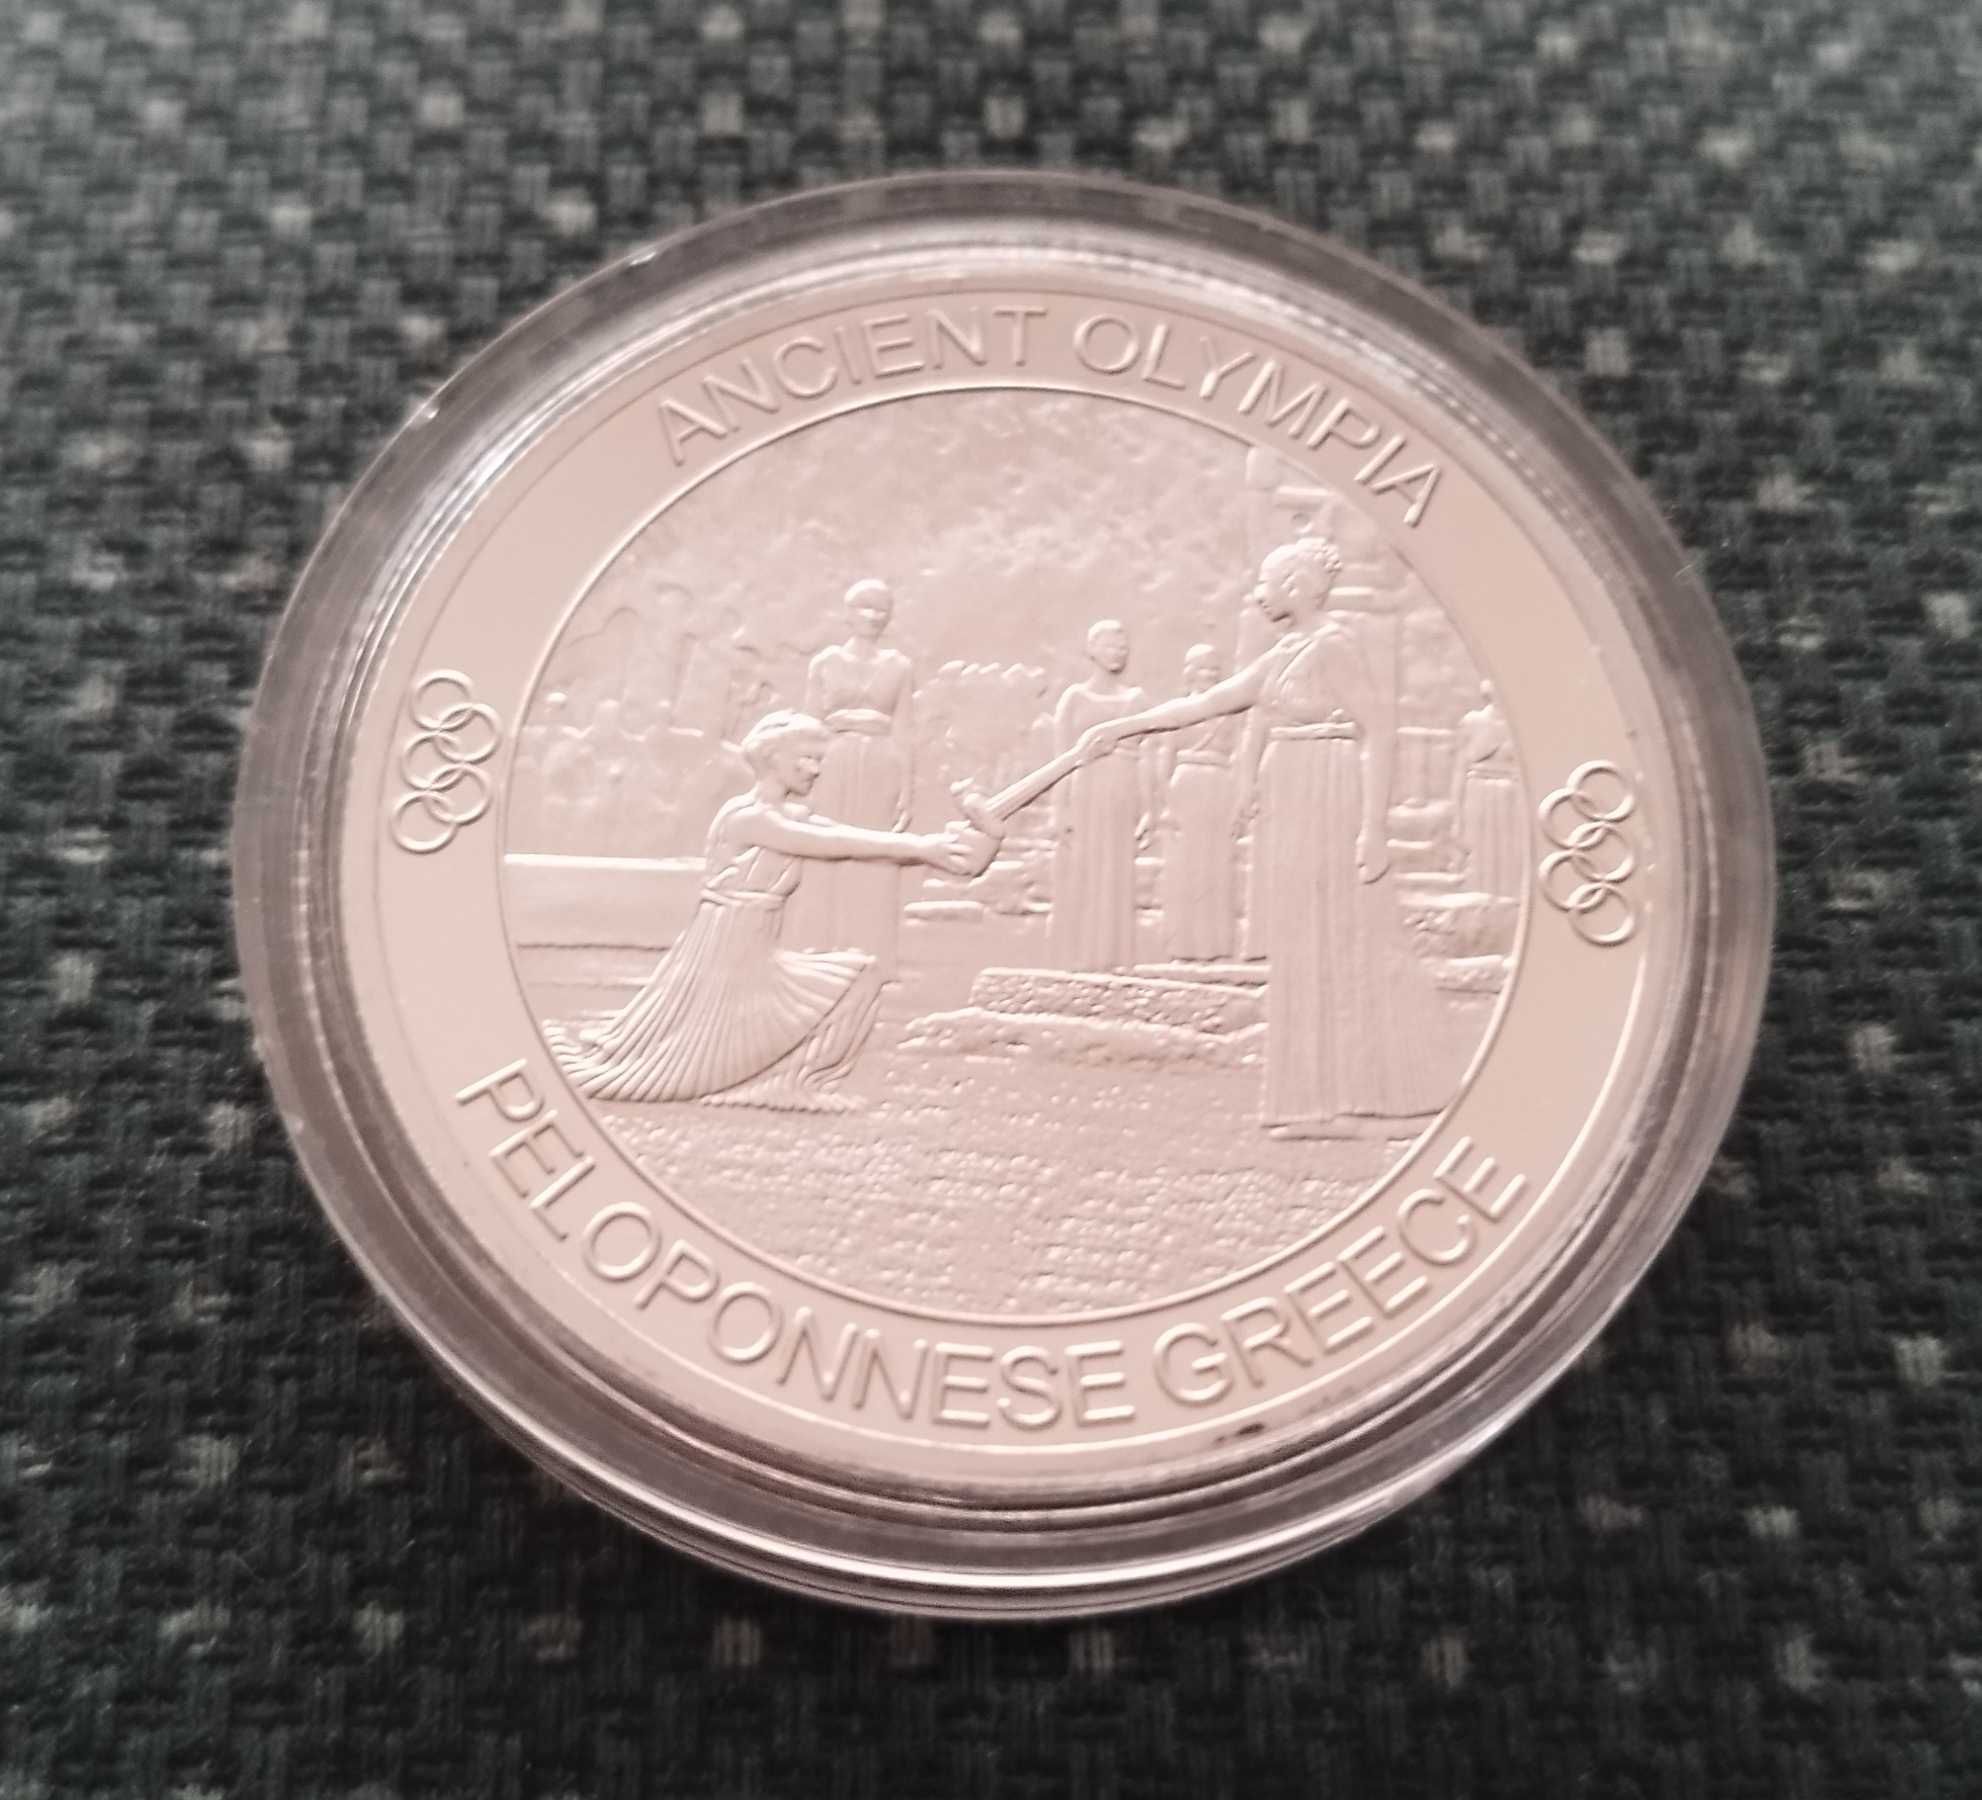 Продавам медал (монета) "Антична Олимпия"